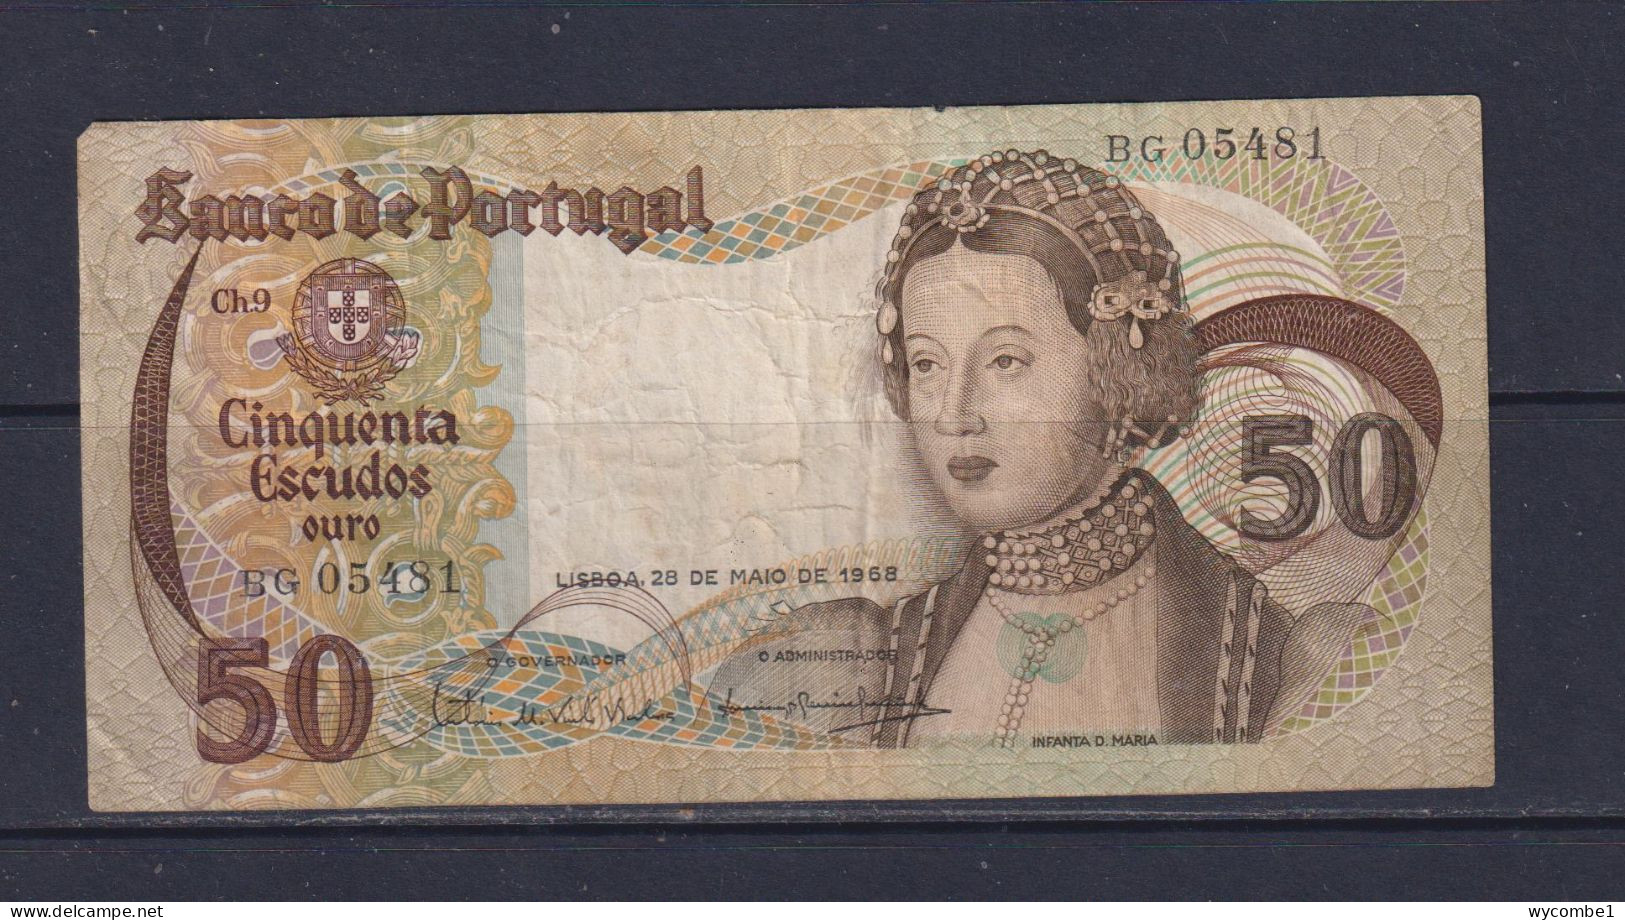 PORTUGAL  - 1968 50 Escudos Circulated Banknote - Portugal